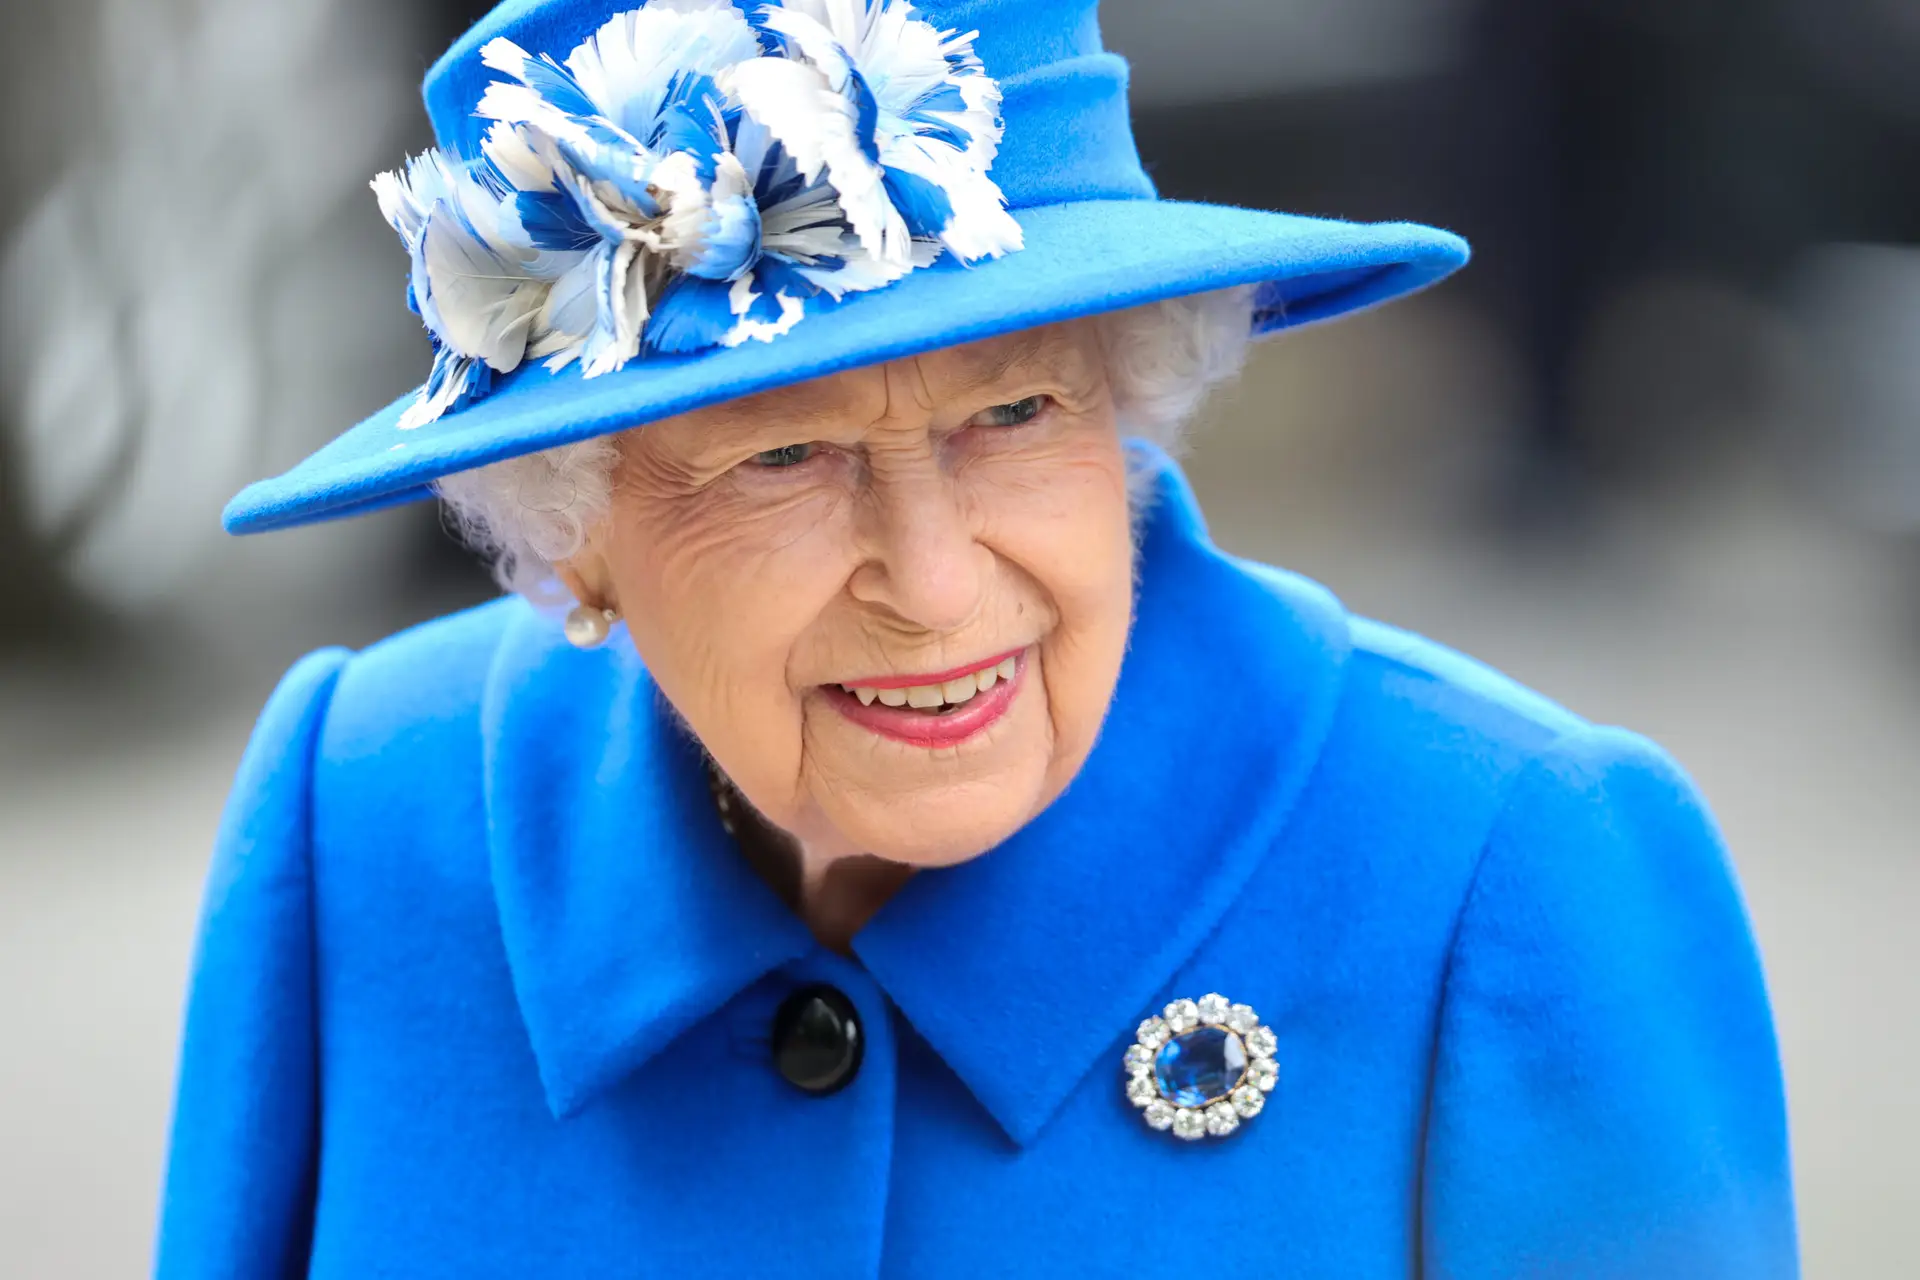 Grande Reportagem SIC: “Isabel II, a rainha”